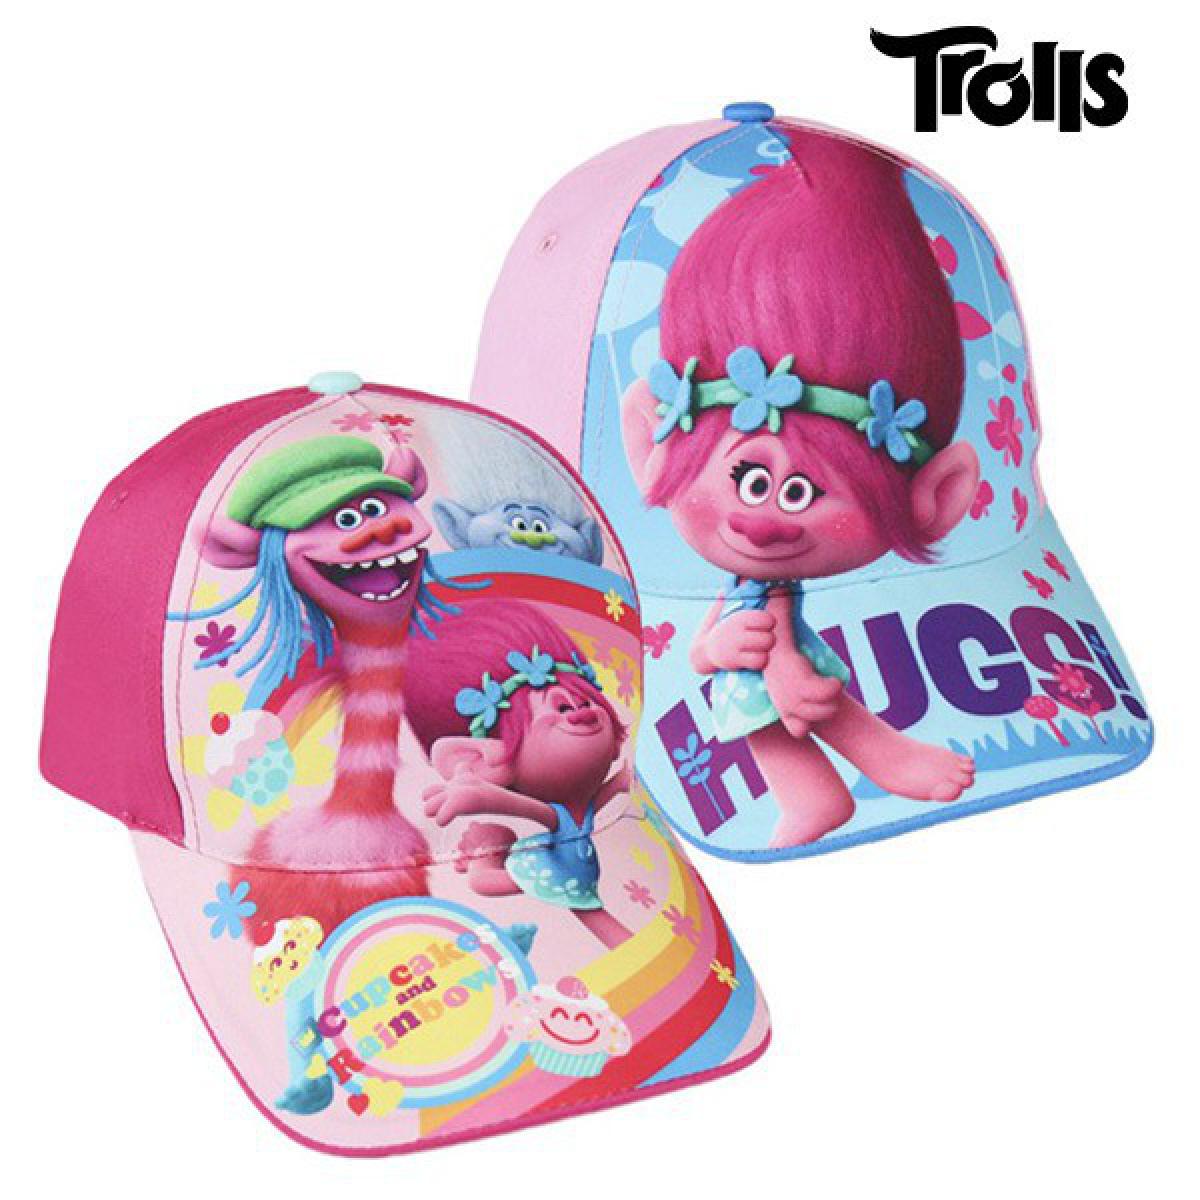 Totalcadeau - Casquette Trolls rose pour fillette (53 cm) - Fille protection soleil Pas cher - Objets déco